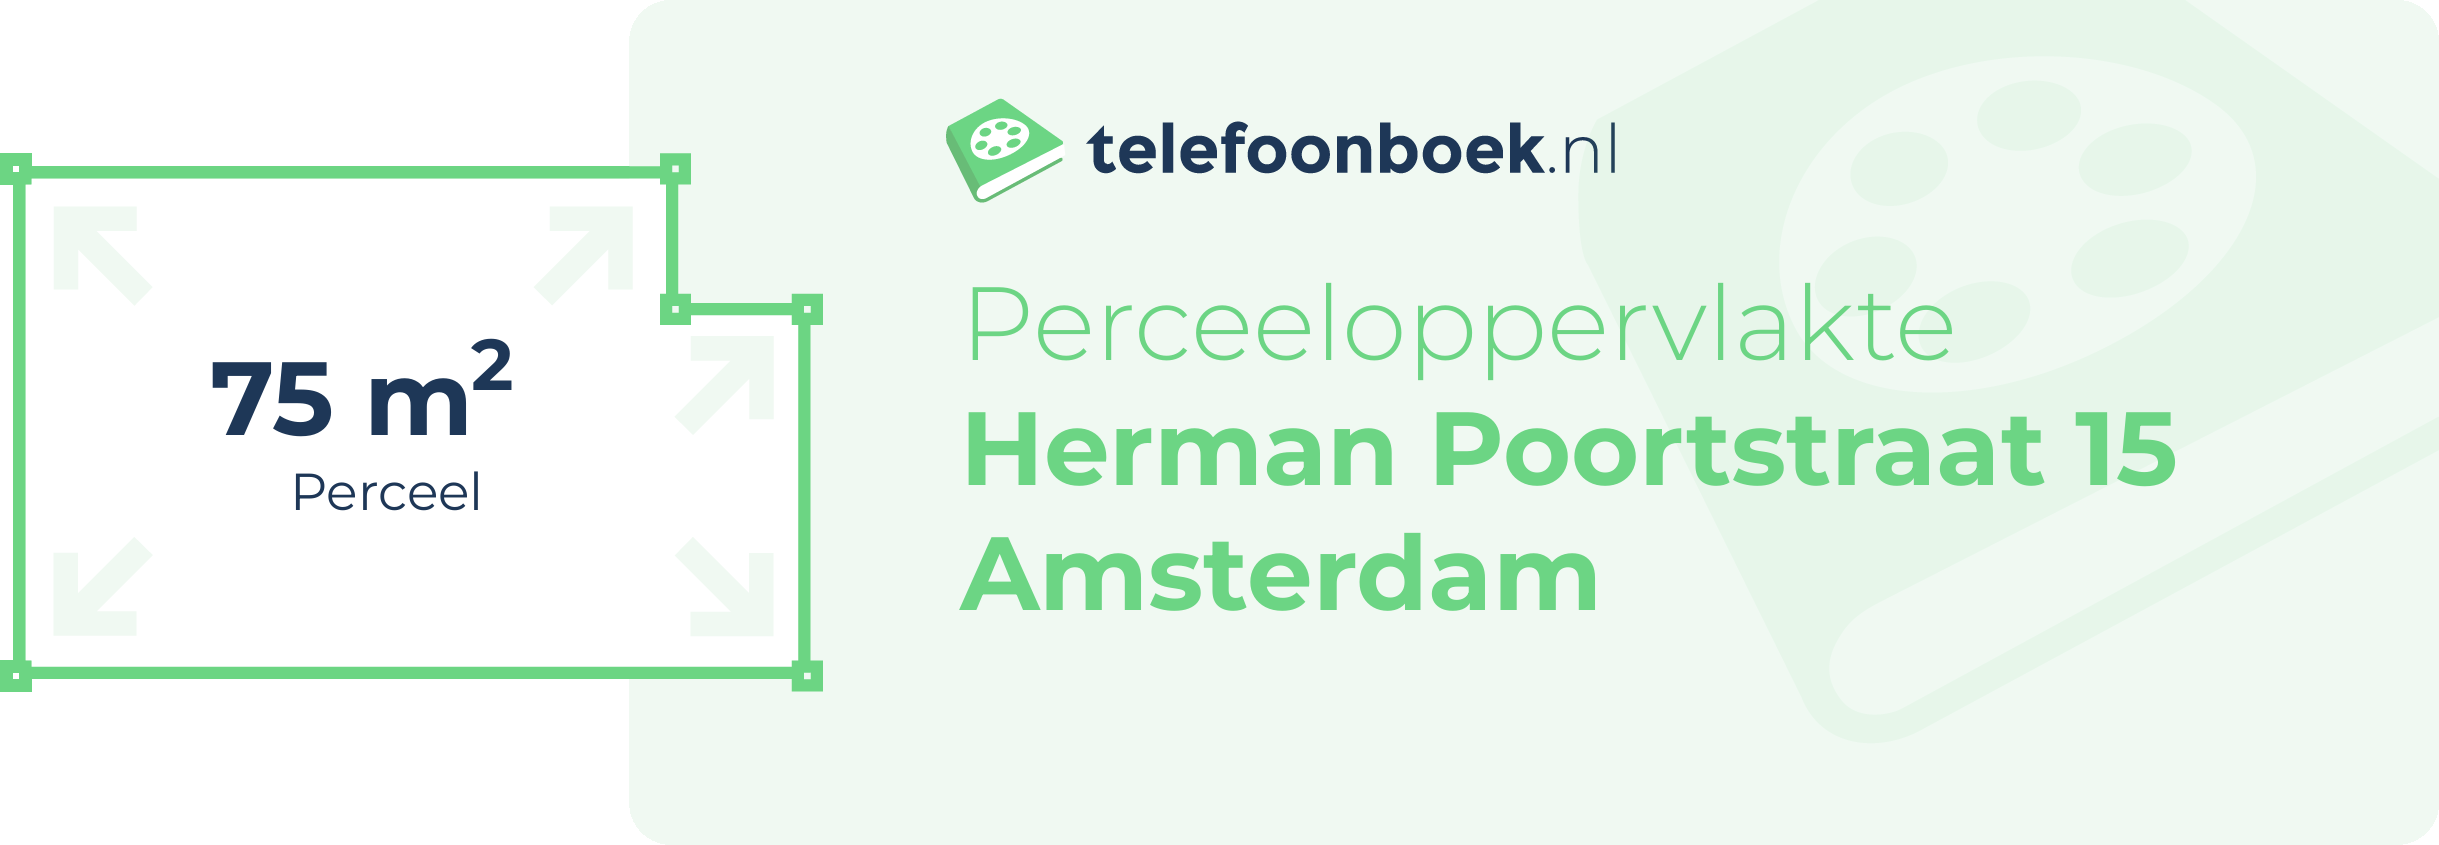 Perceeloppervlakte Herman Poortstraat 15 Amsterdam